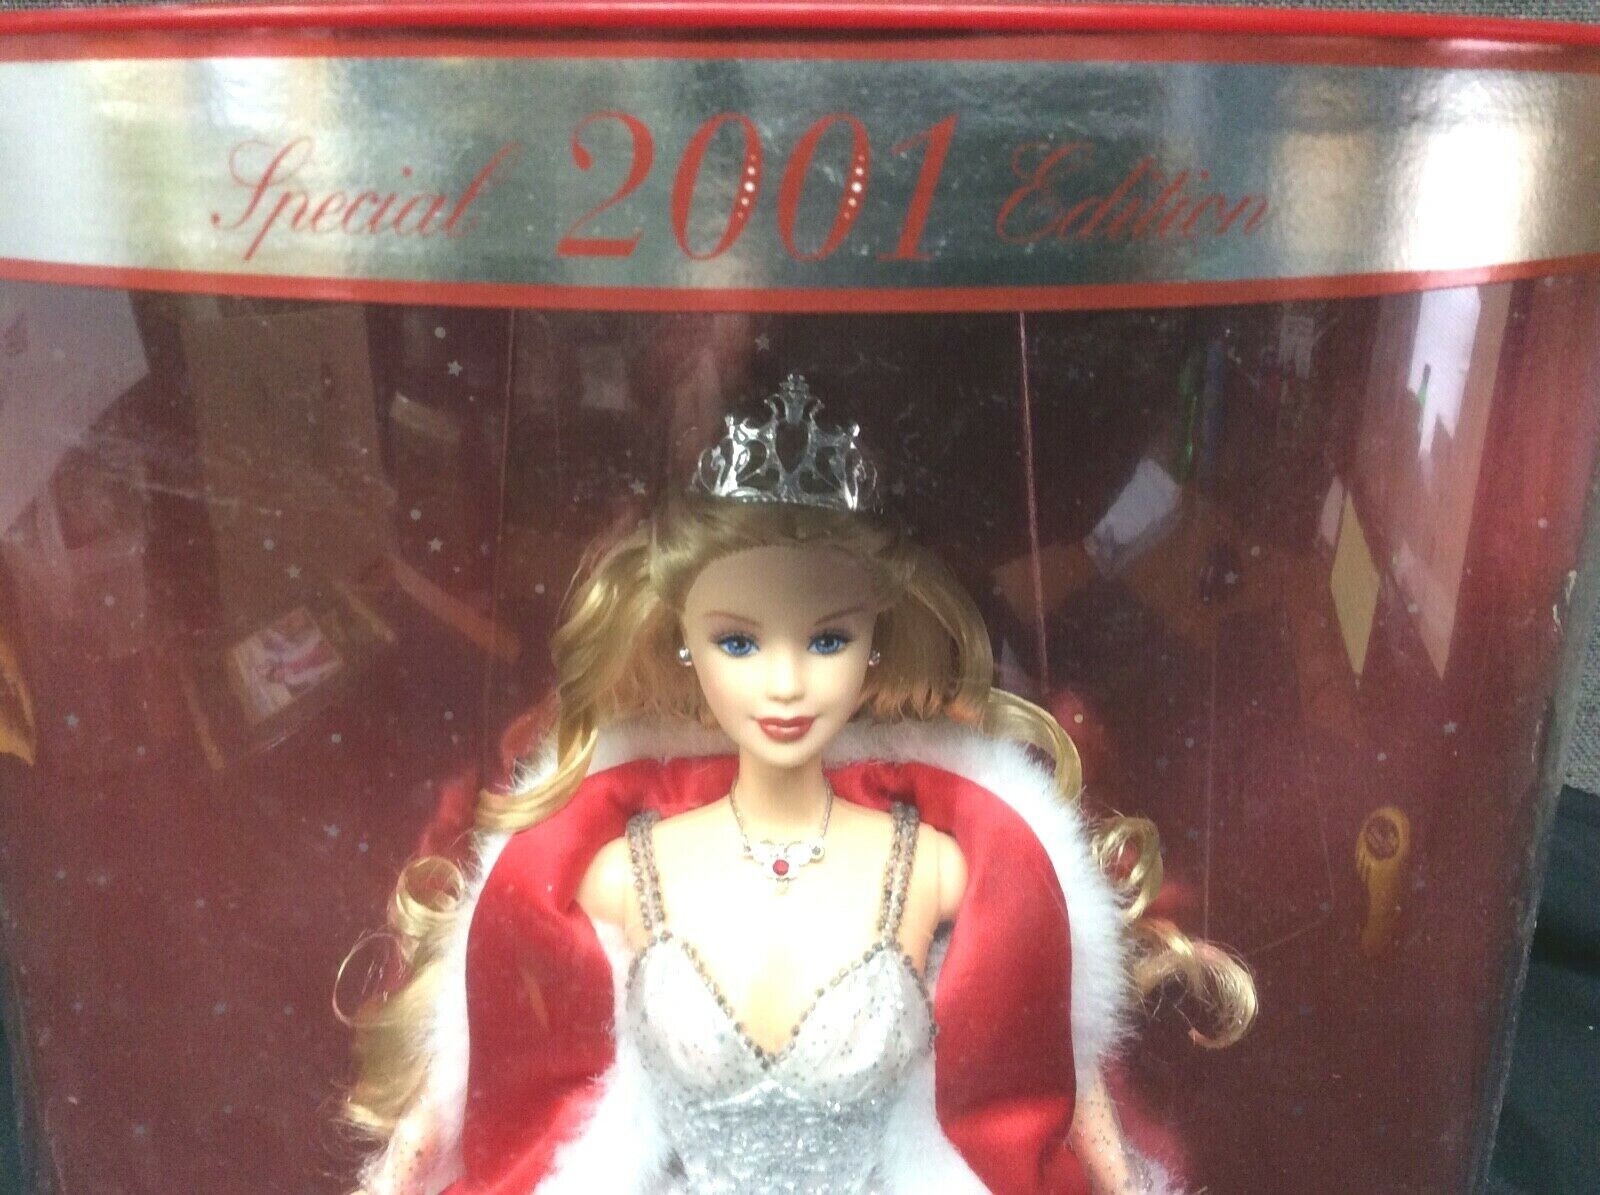 Mattel Holiday Celebration 2001 Barbie Doll 50304 for sale online